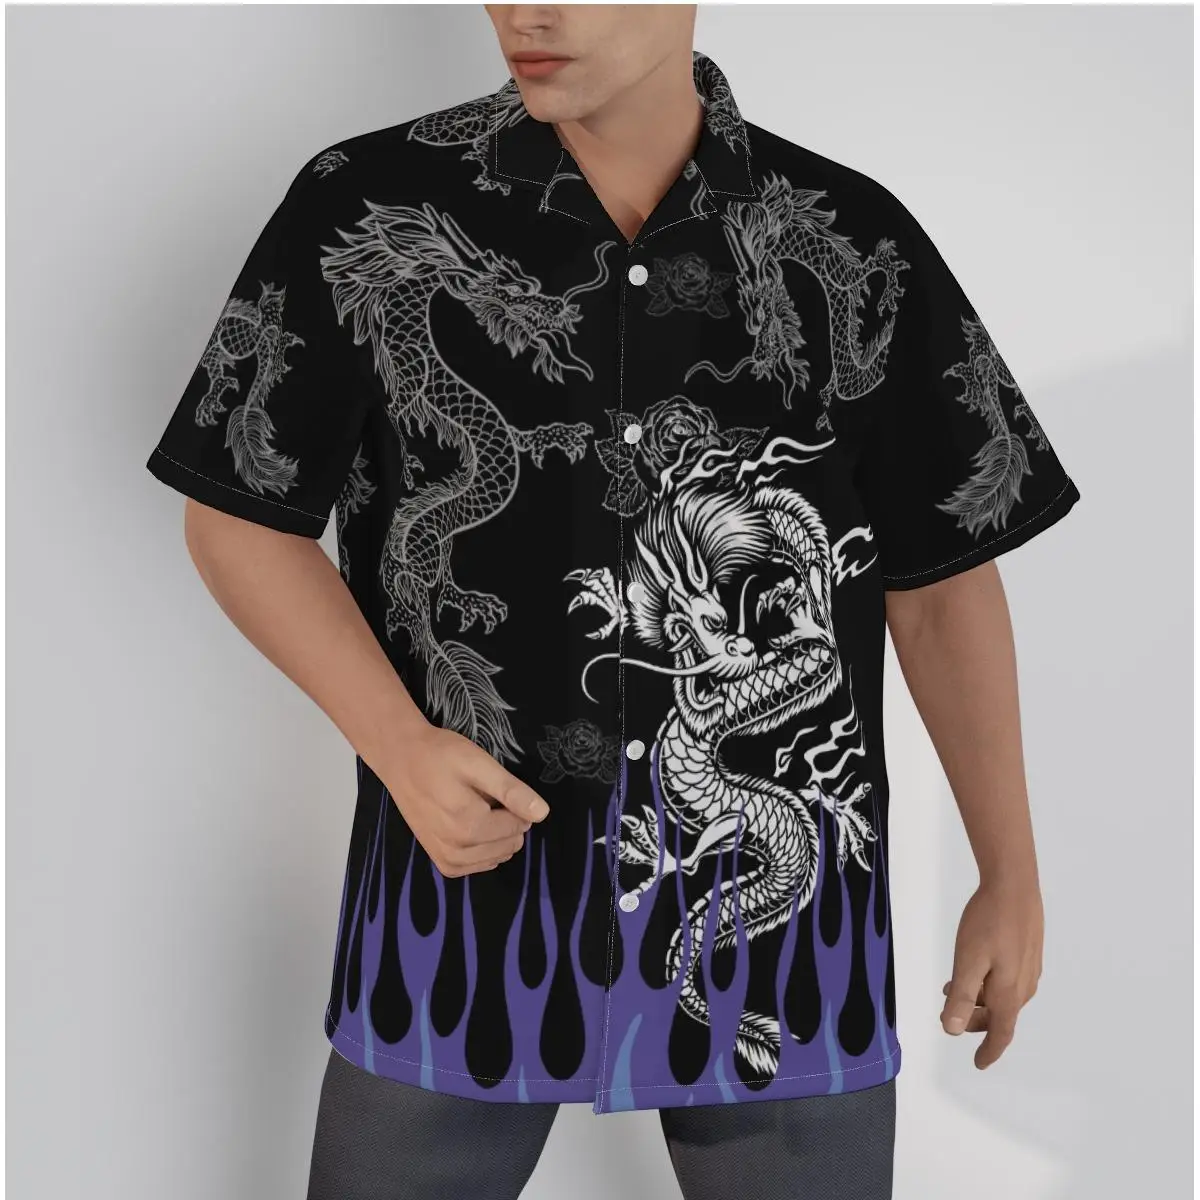 

Men's Casual Black hirt Cool Dragon Print Character Beach Short Sleeve Summer Streetwear Button Up Patchwork Tops 3D Shirts